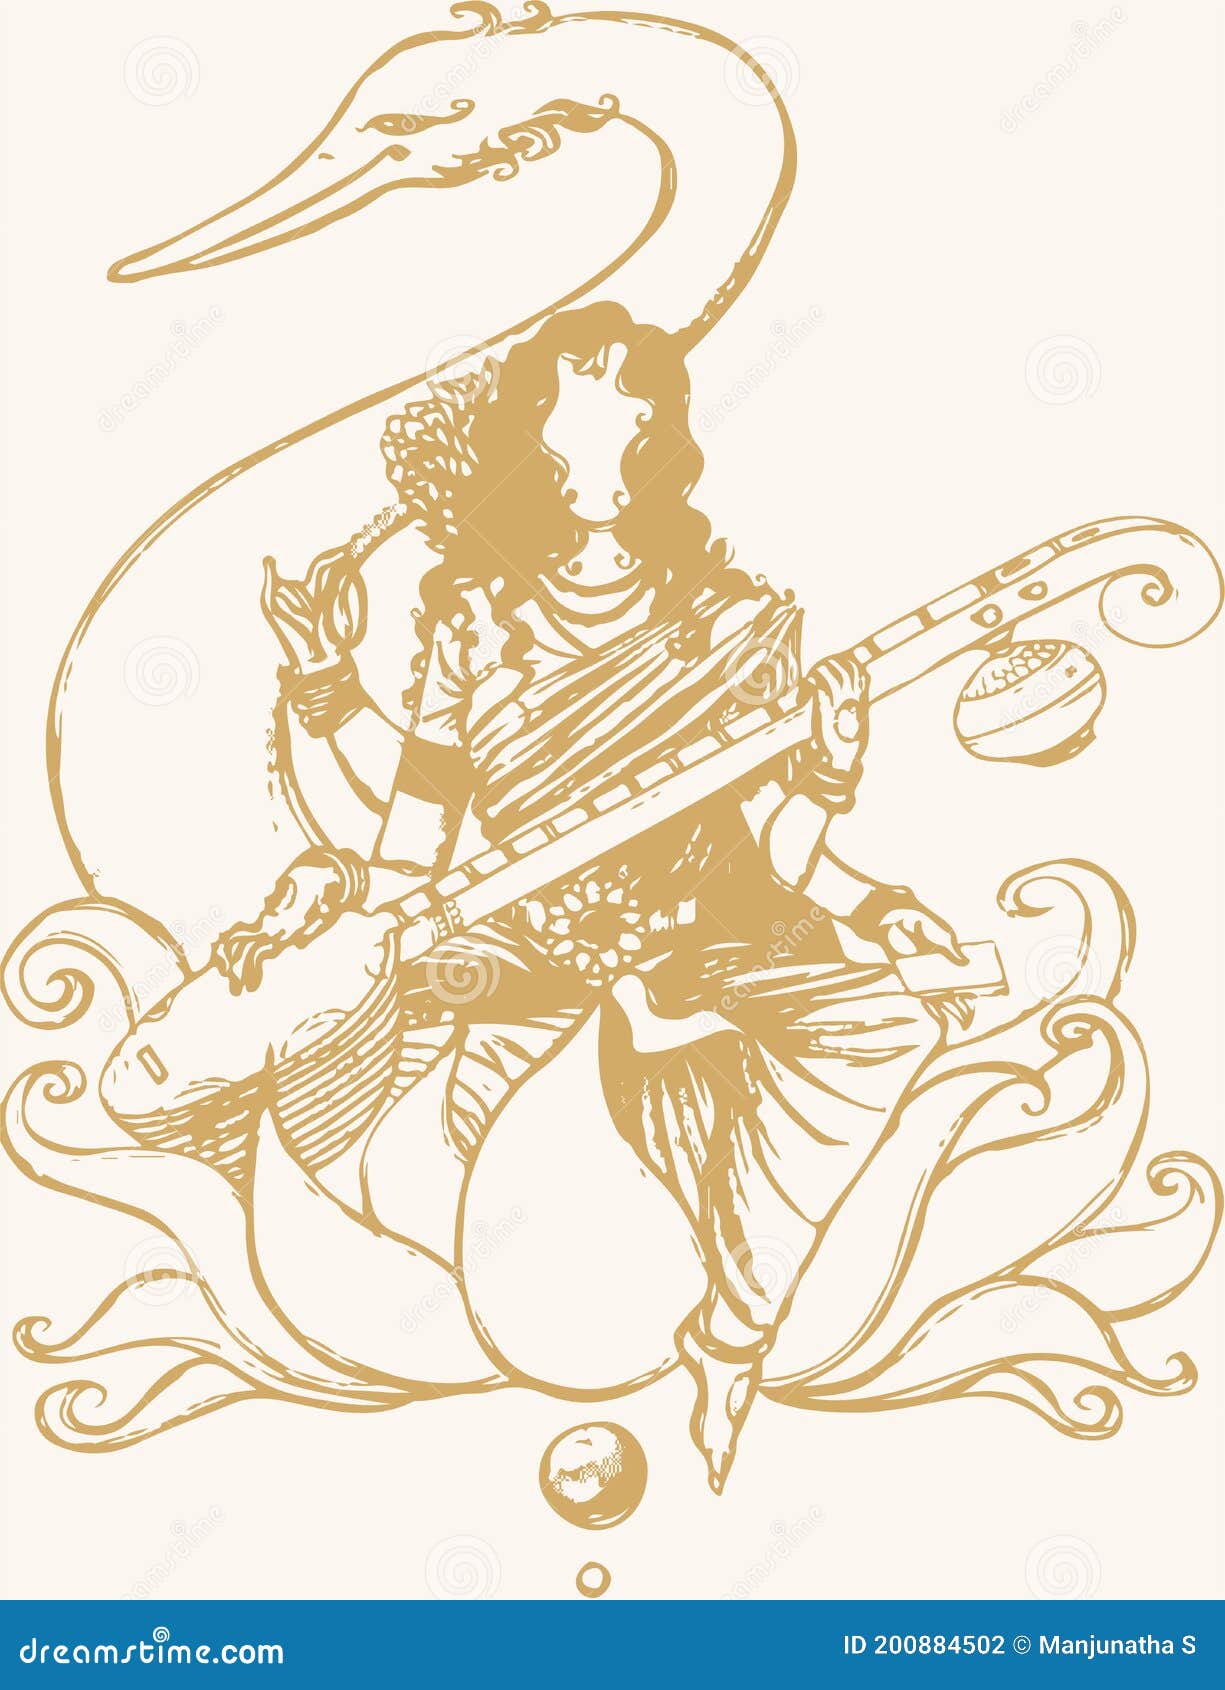 Goddess Saraswati Artist chetanadvirkar digitalart art drawing  illustration artist artwork digitaldrawing  Instagram